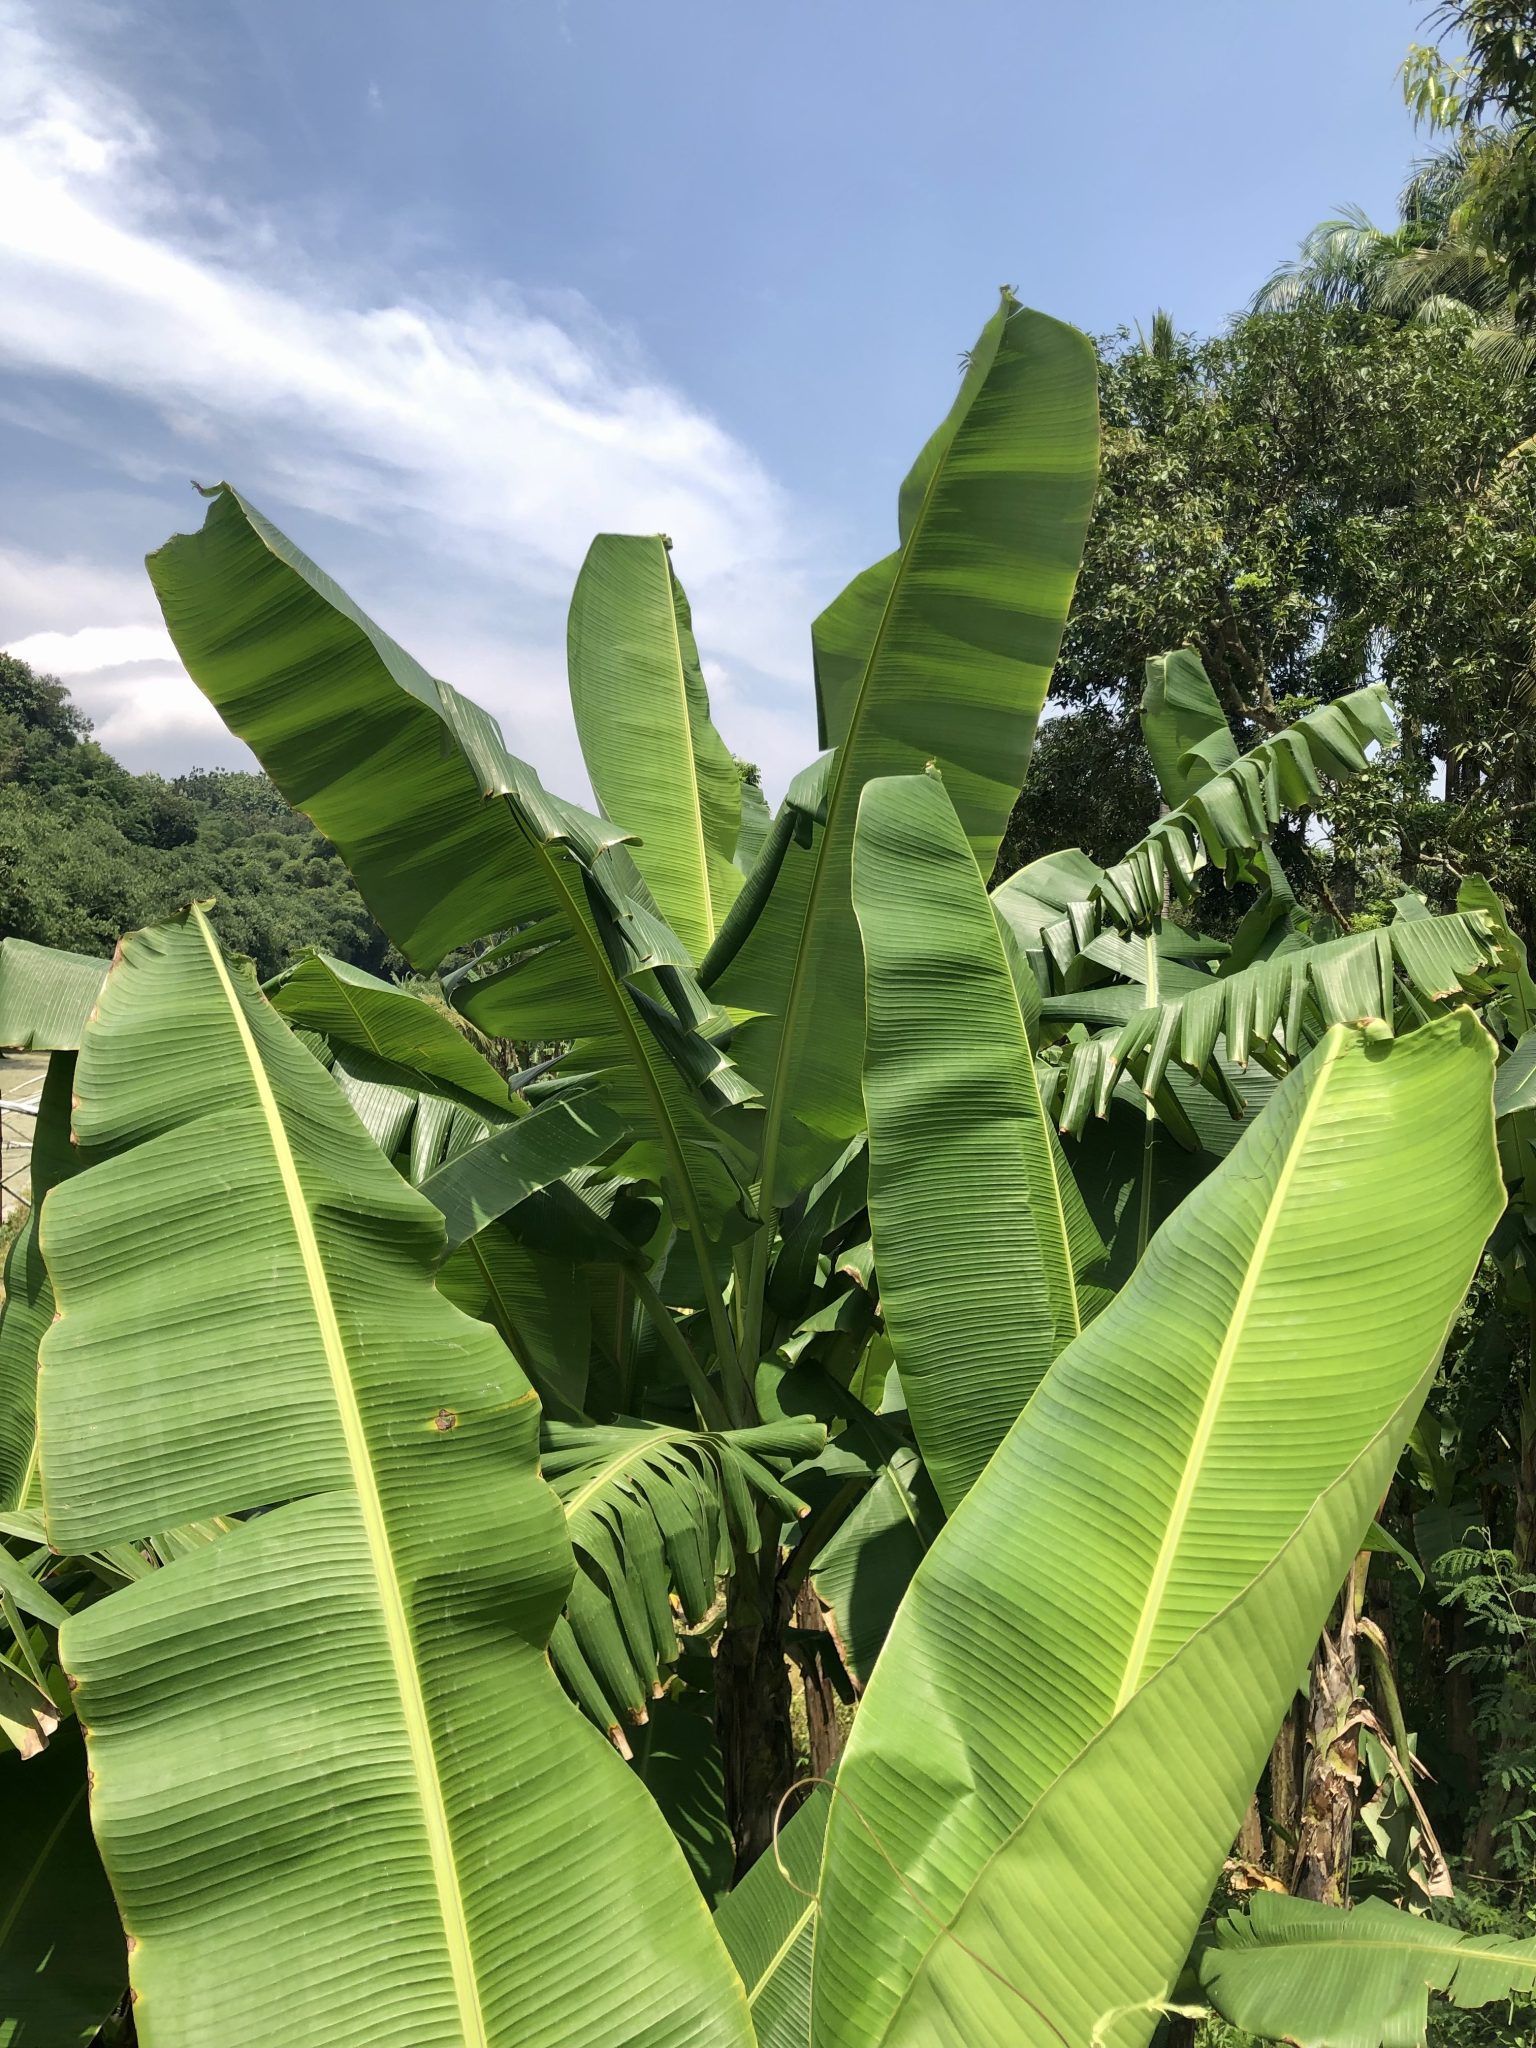 Banana leaves